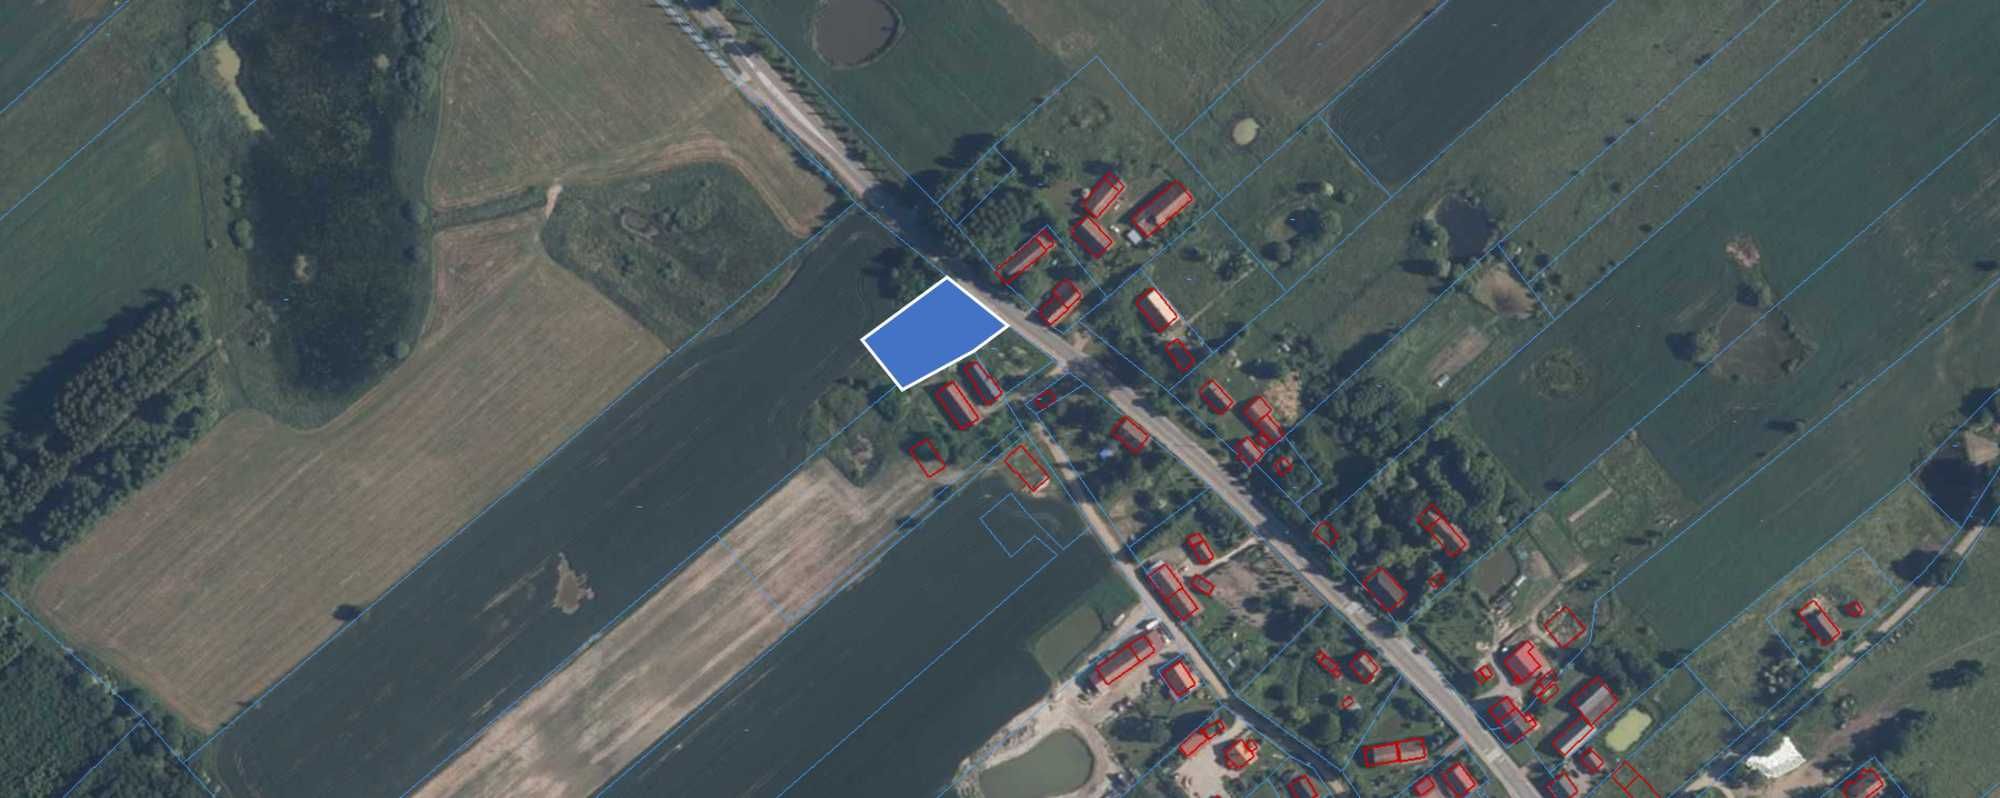 #Działka 0,20 ha, idealna pod budowę domu, okolice Lidzbarka Warmiń.#